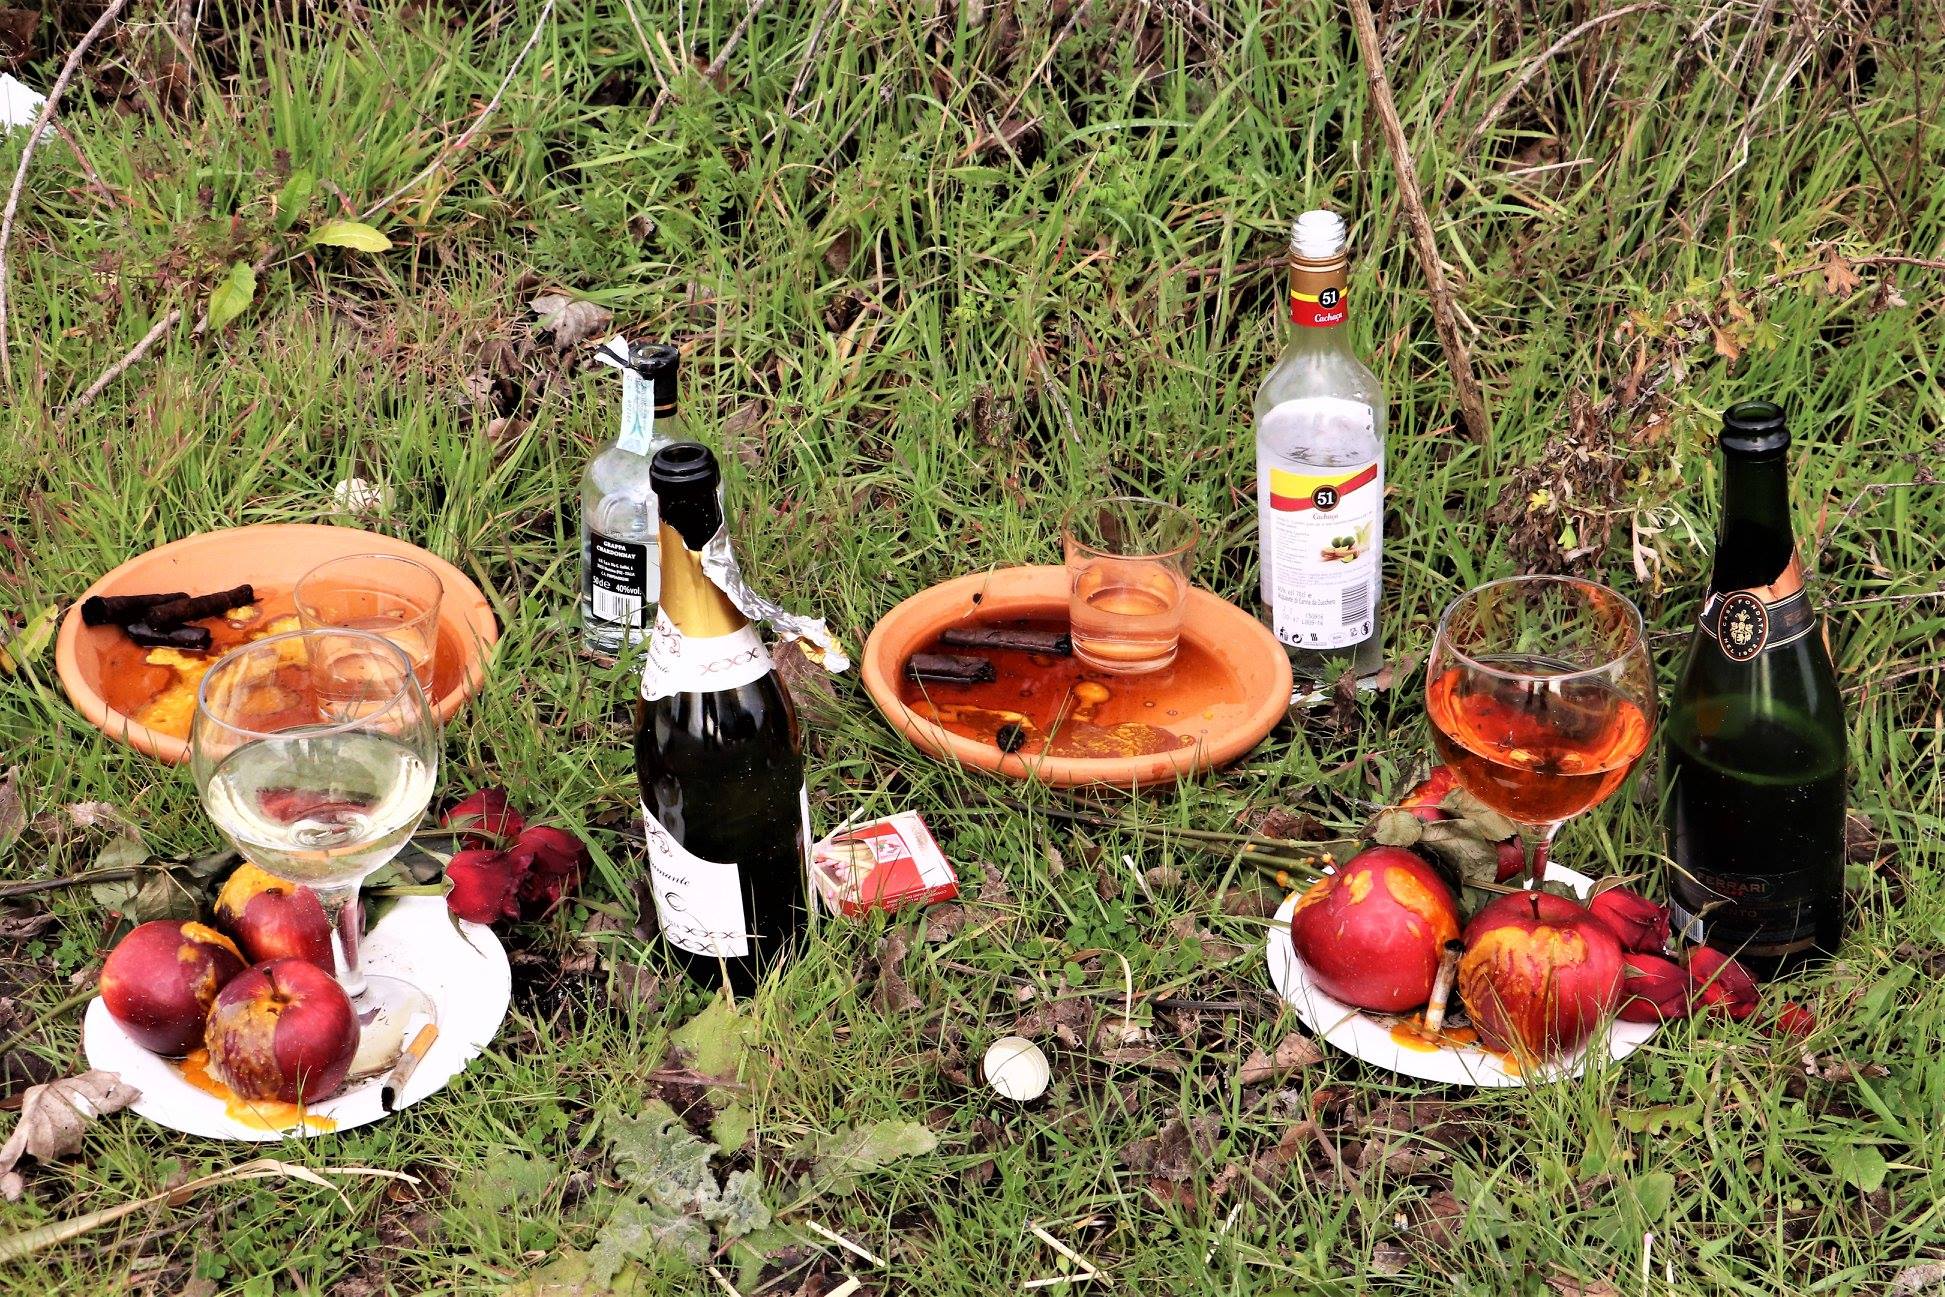 Bottiglie, frutta, bicchieri, fiammiferi e sigari: è un rito afrobrasiliano